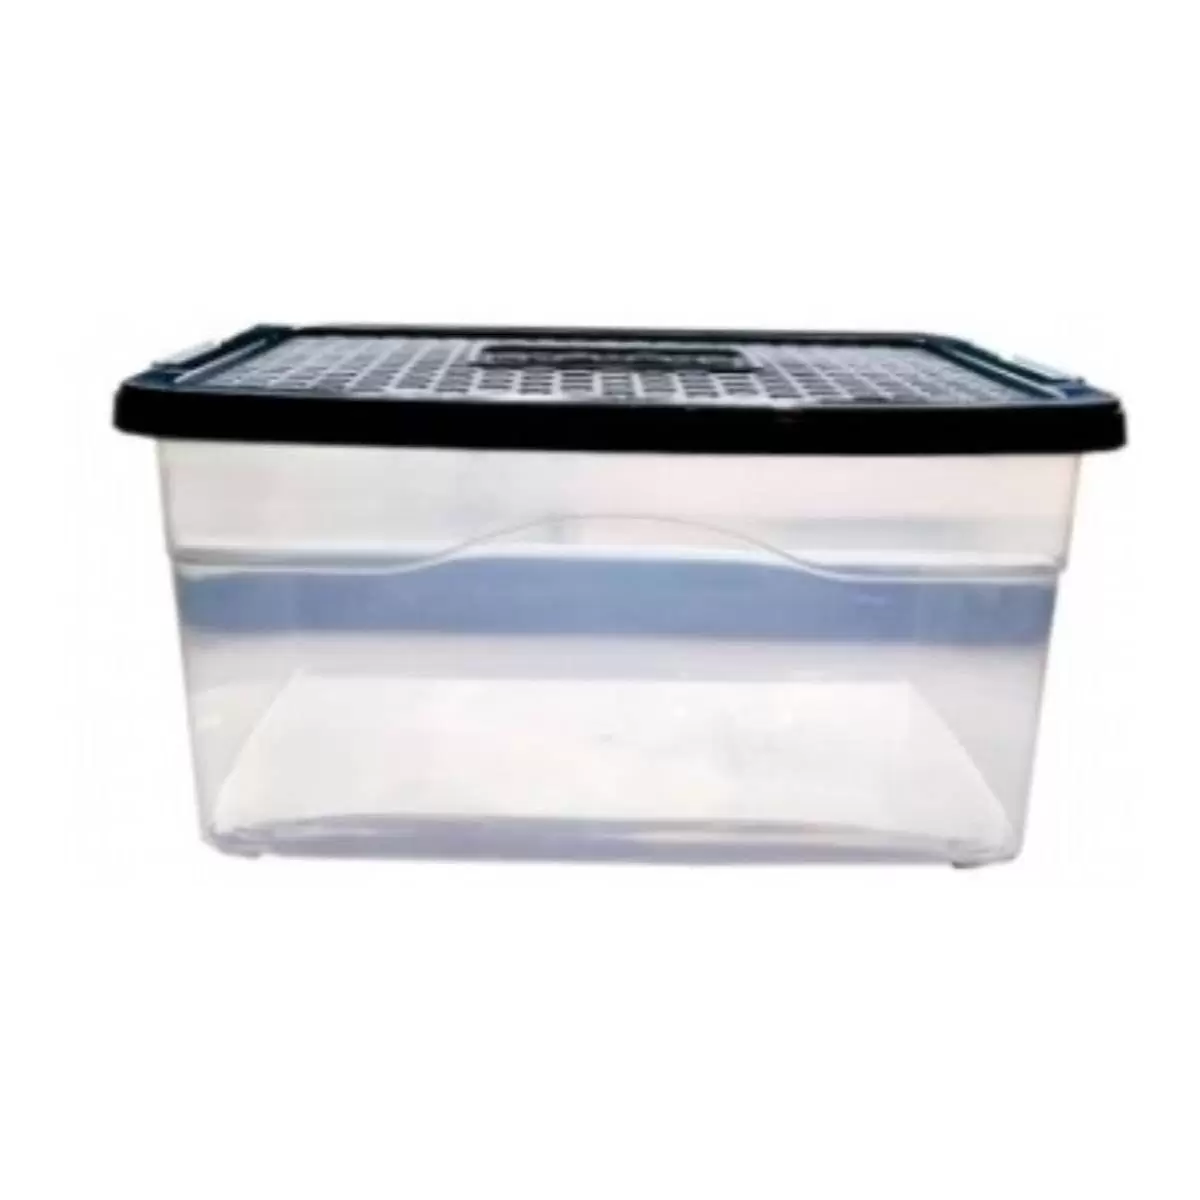 Caja organizadora con tapa Clear Rimax elaborada en plástico.